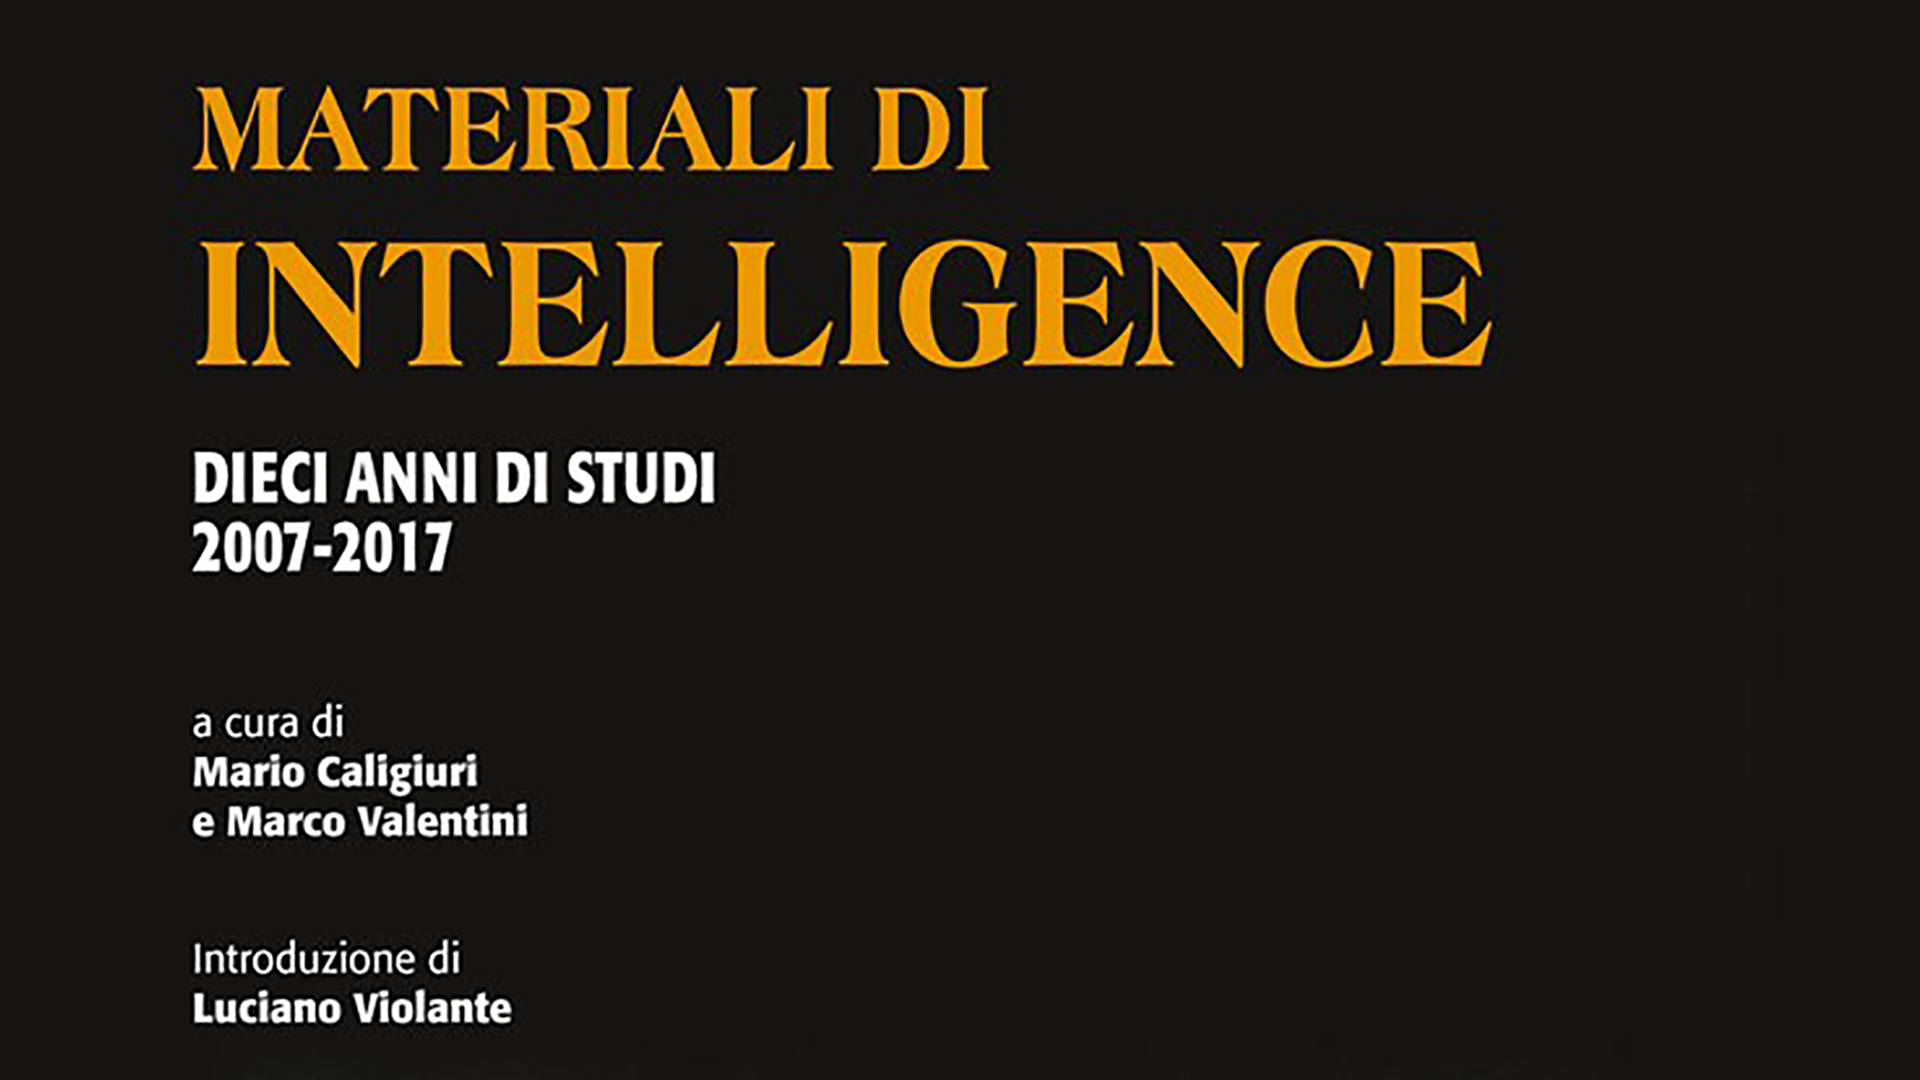 Materiali di intelligence: la presentazione a Udine | Scrittori.tv